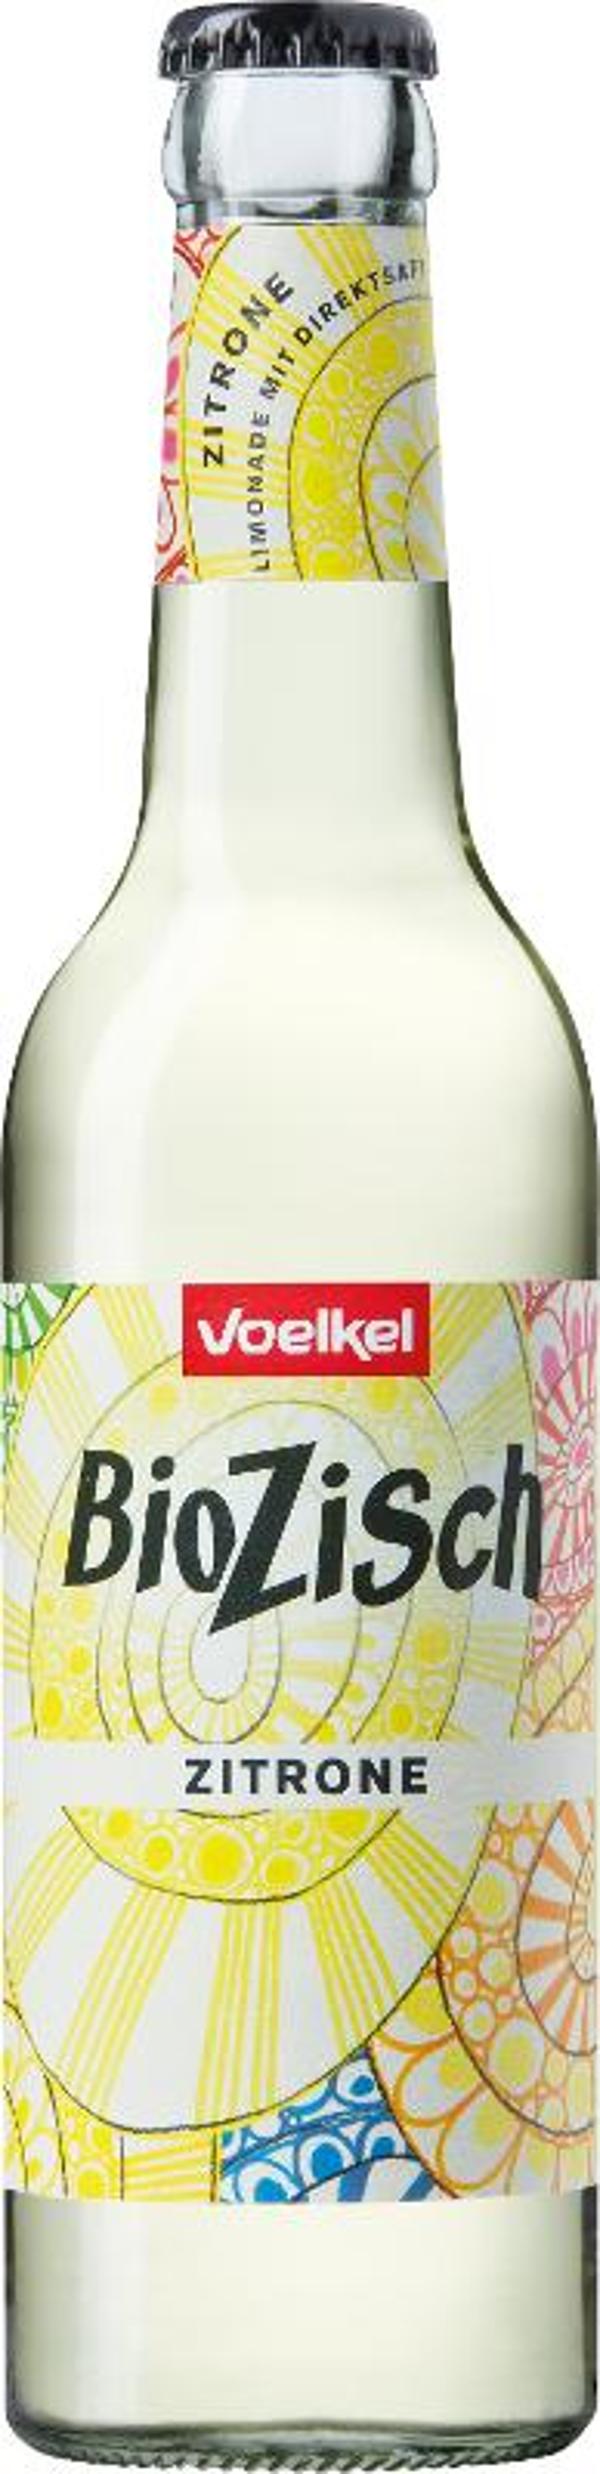 Produktfoto zu Bio Zisch Zitrone 0,33 l Voelkel